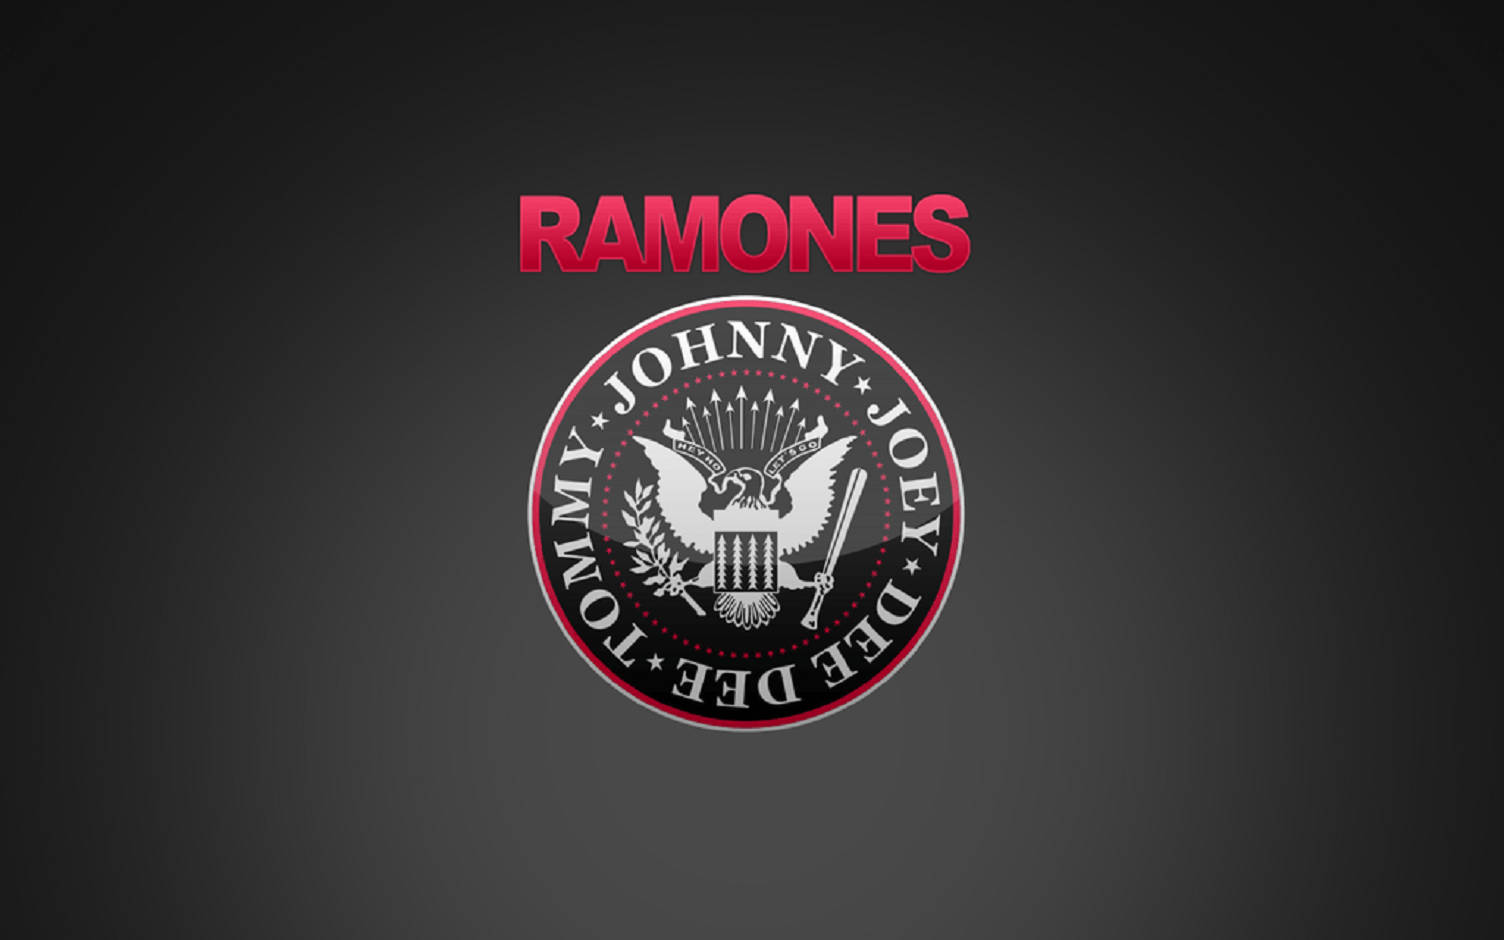 Logotipodel Águila Con Sello De La Banda De Rock Estadounidense Ramones Y Tipografía En Color Rosa. Fondo de pantalla